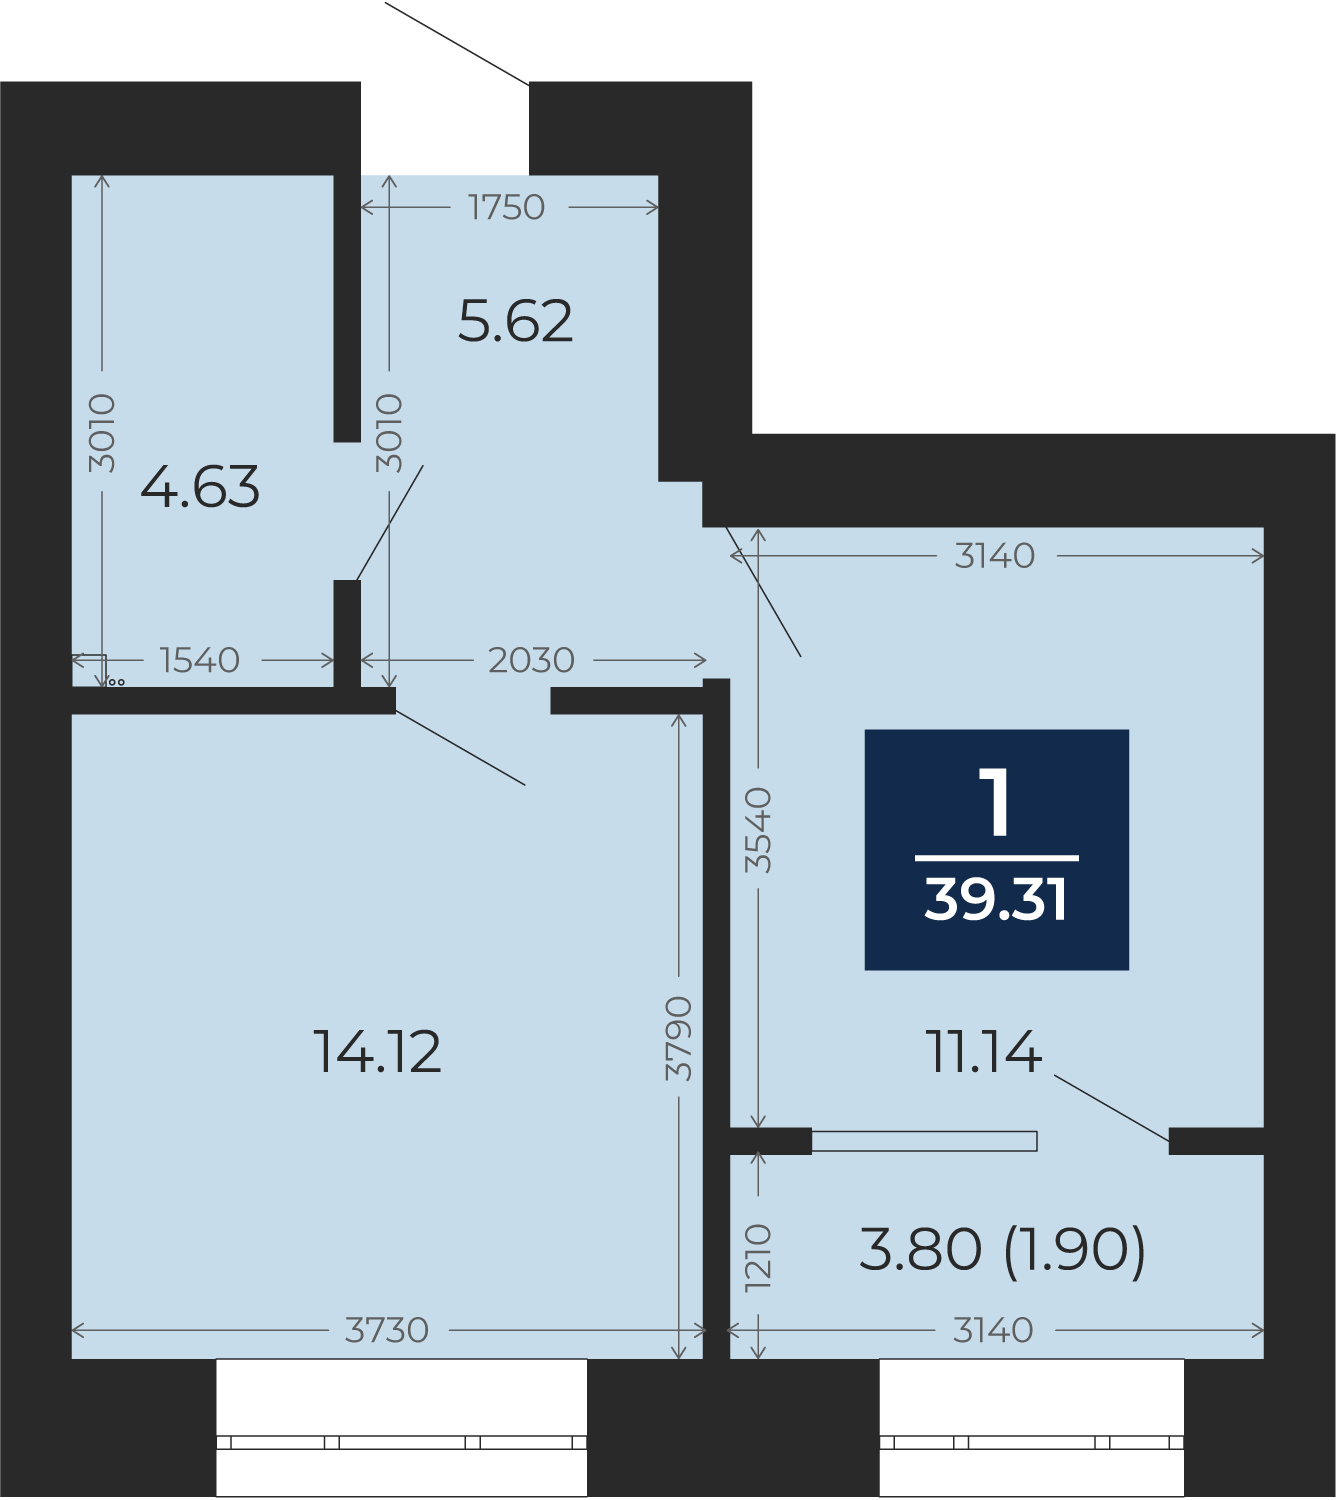 Квартира № 129, 1-комнатная, 39.31 кв. м, 2 этаж